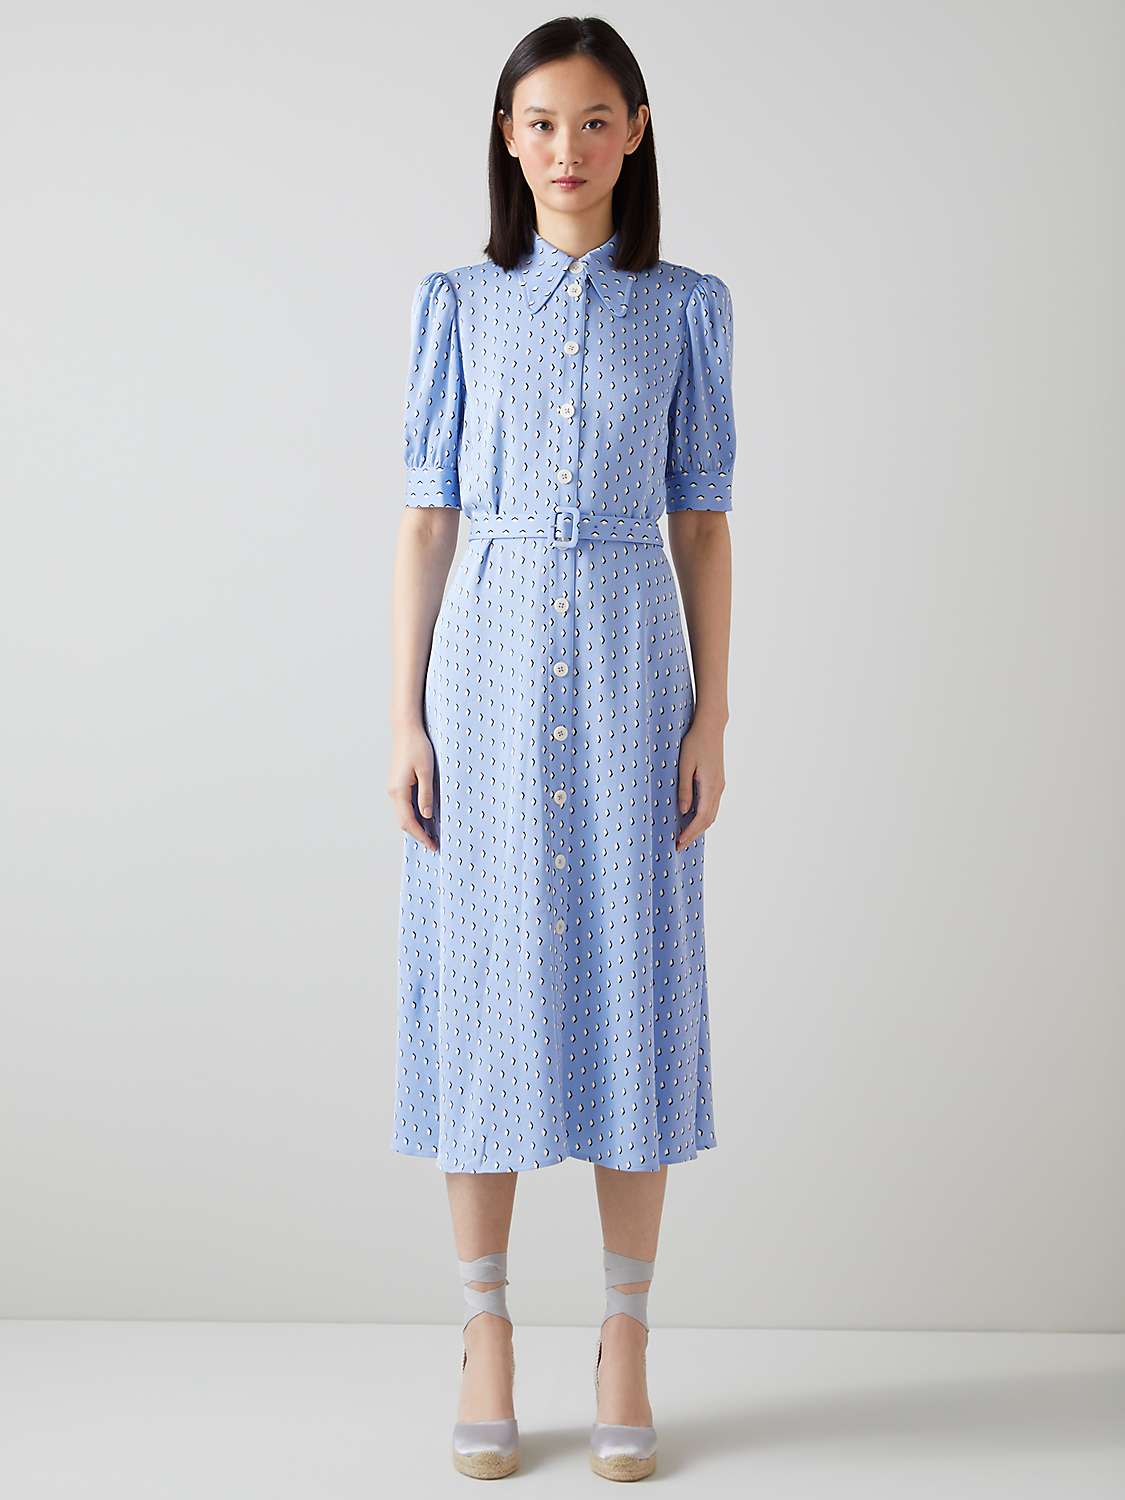 L.K.Bennett Valerie Diamond Print Shirt Dress, Blue/Cream at John Lewis ...